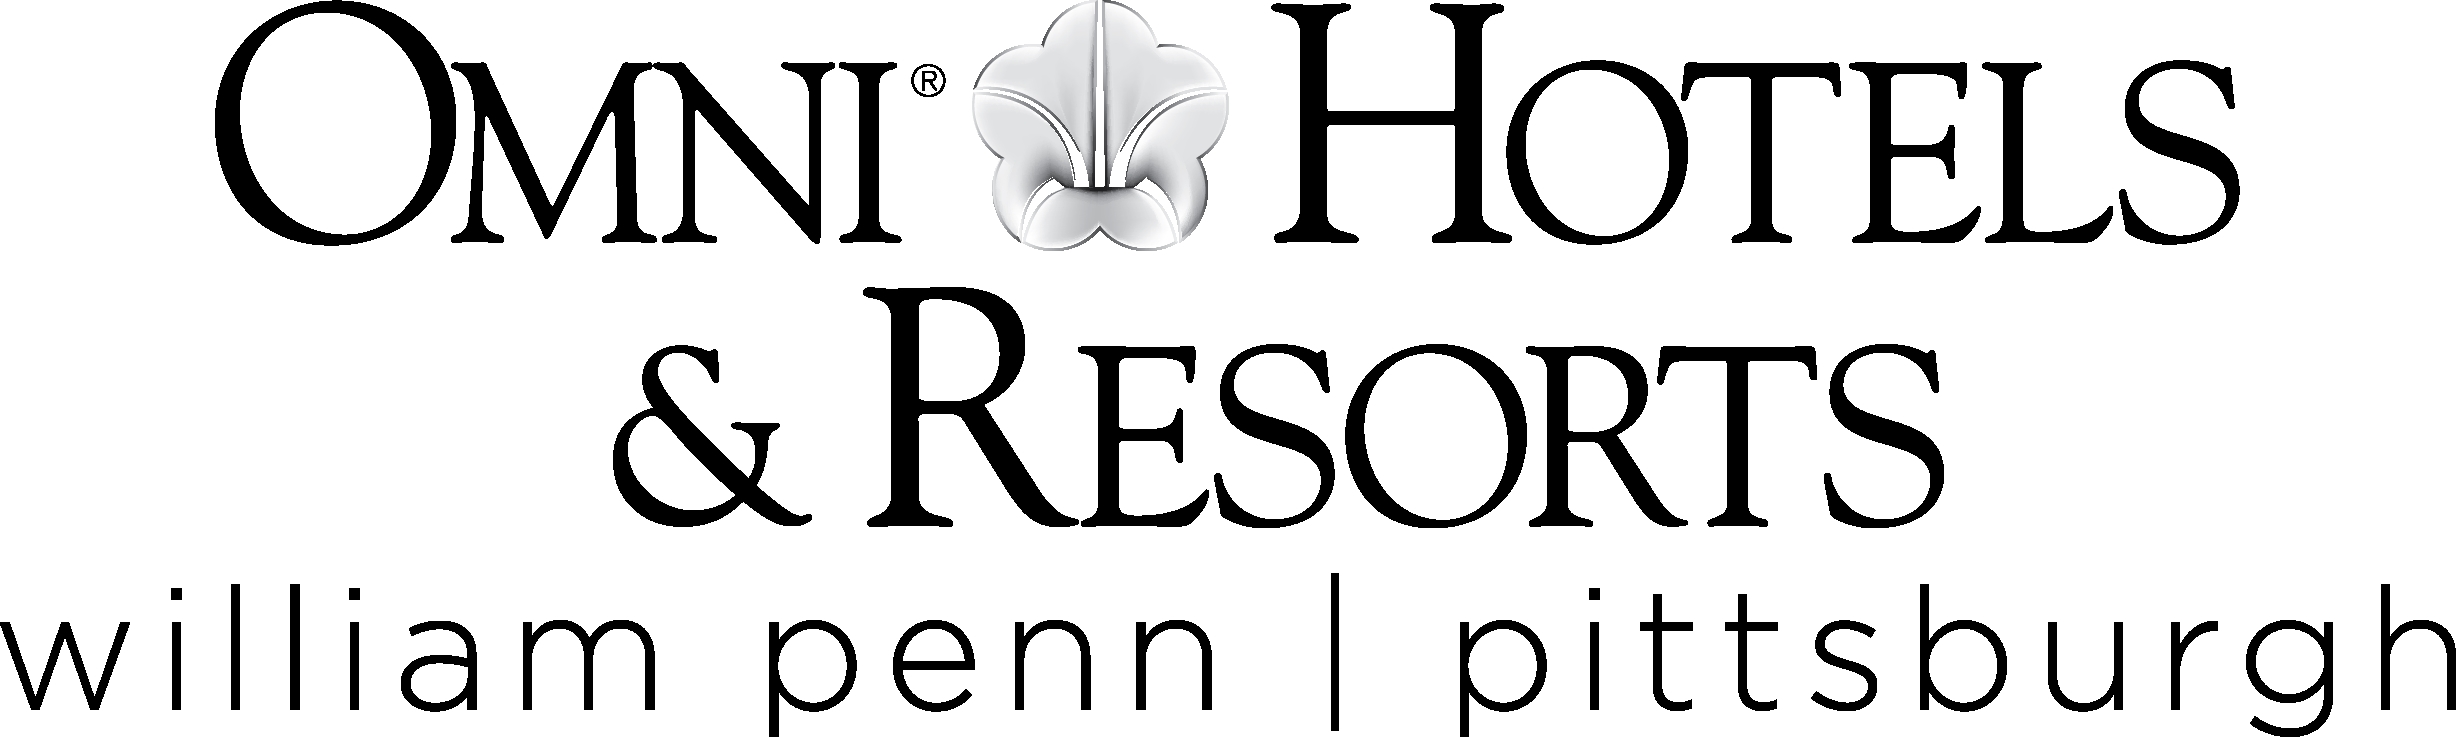 Omni William Penn Hotel logo